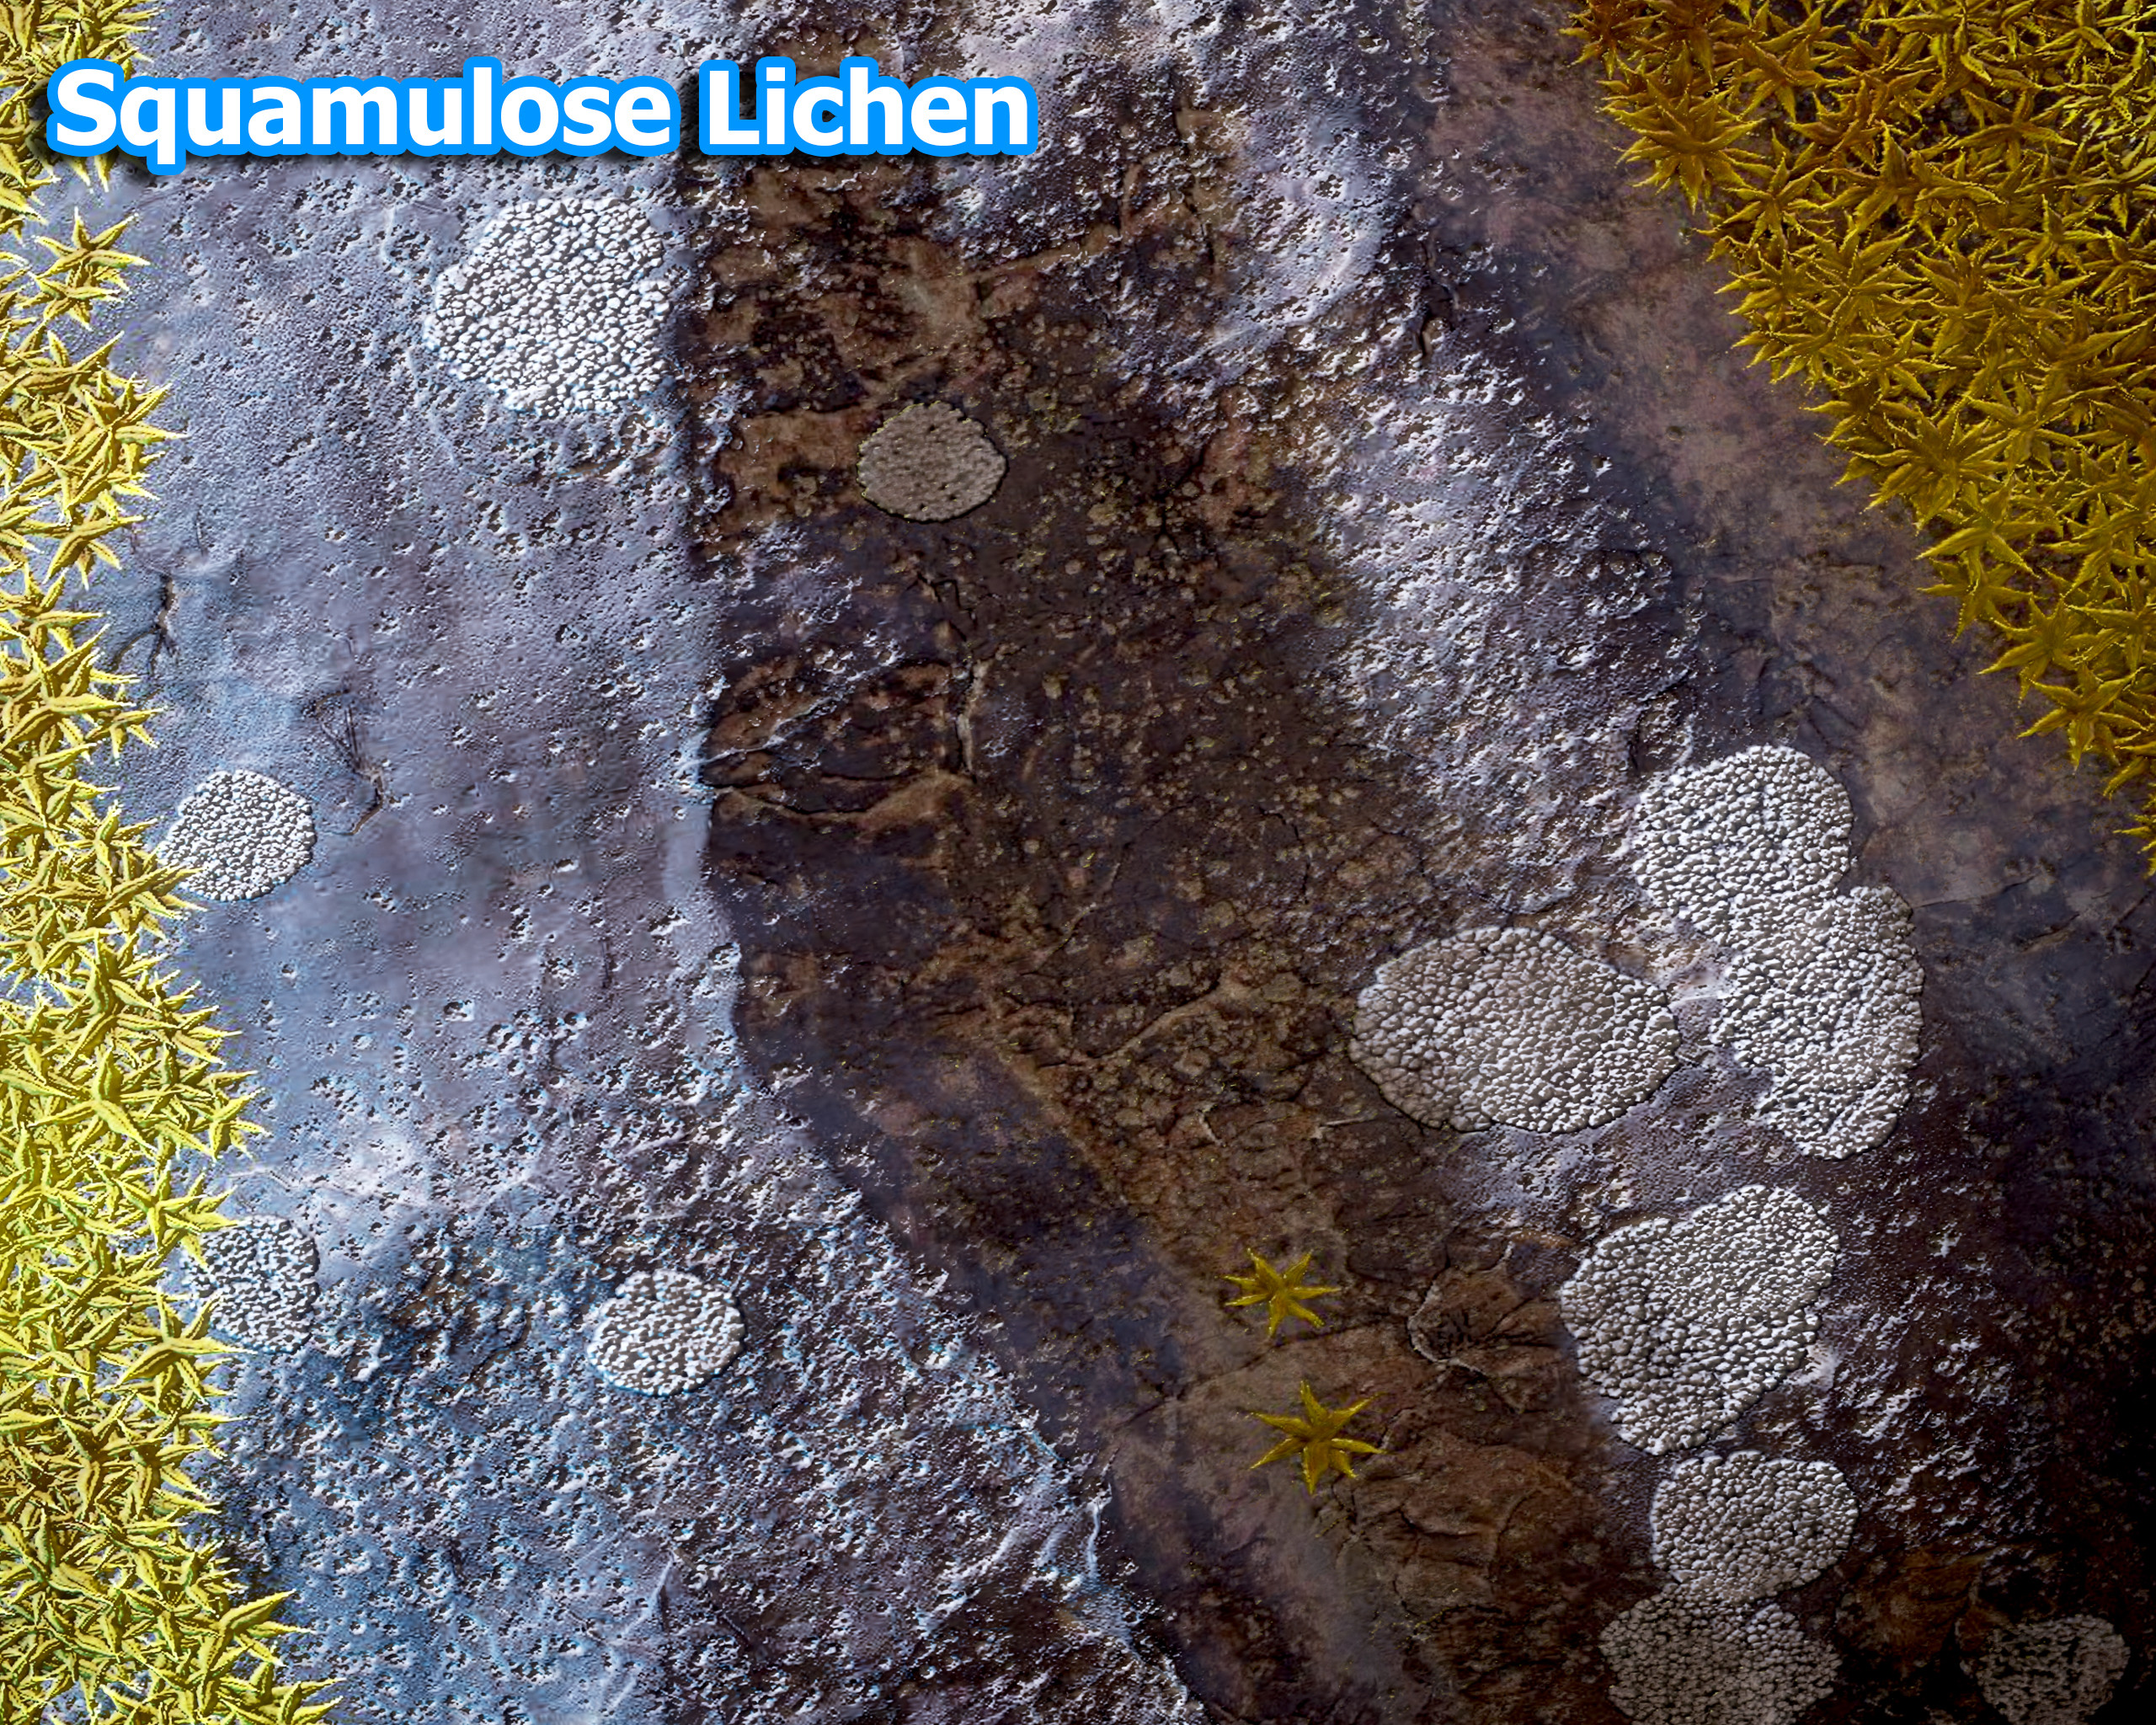 Squamulose Lichen grows like cells